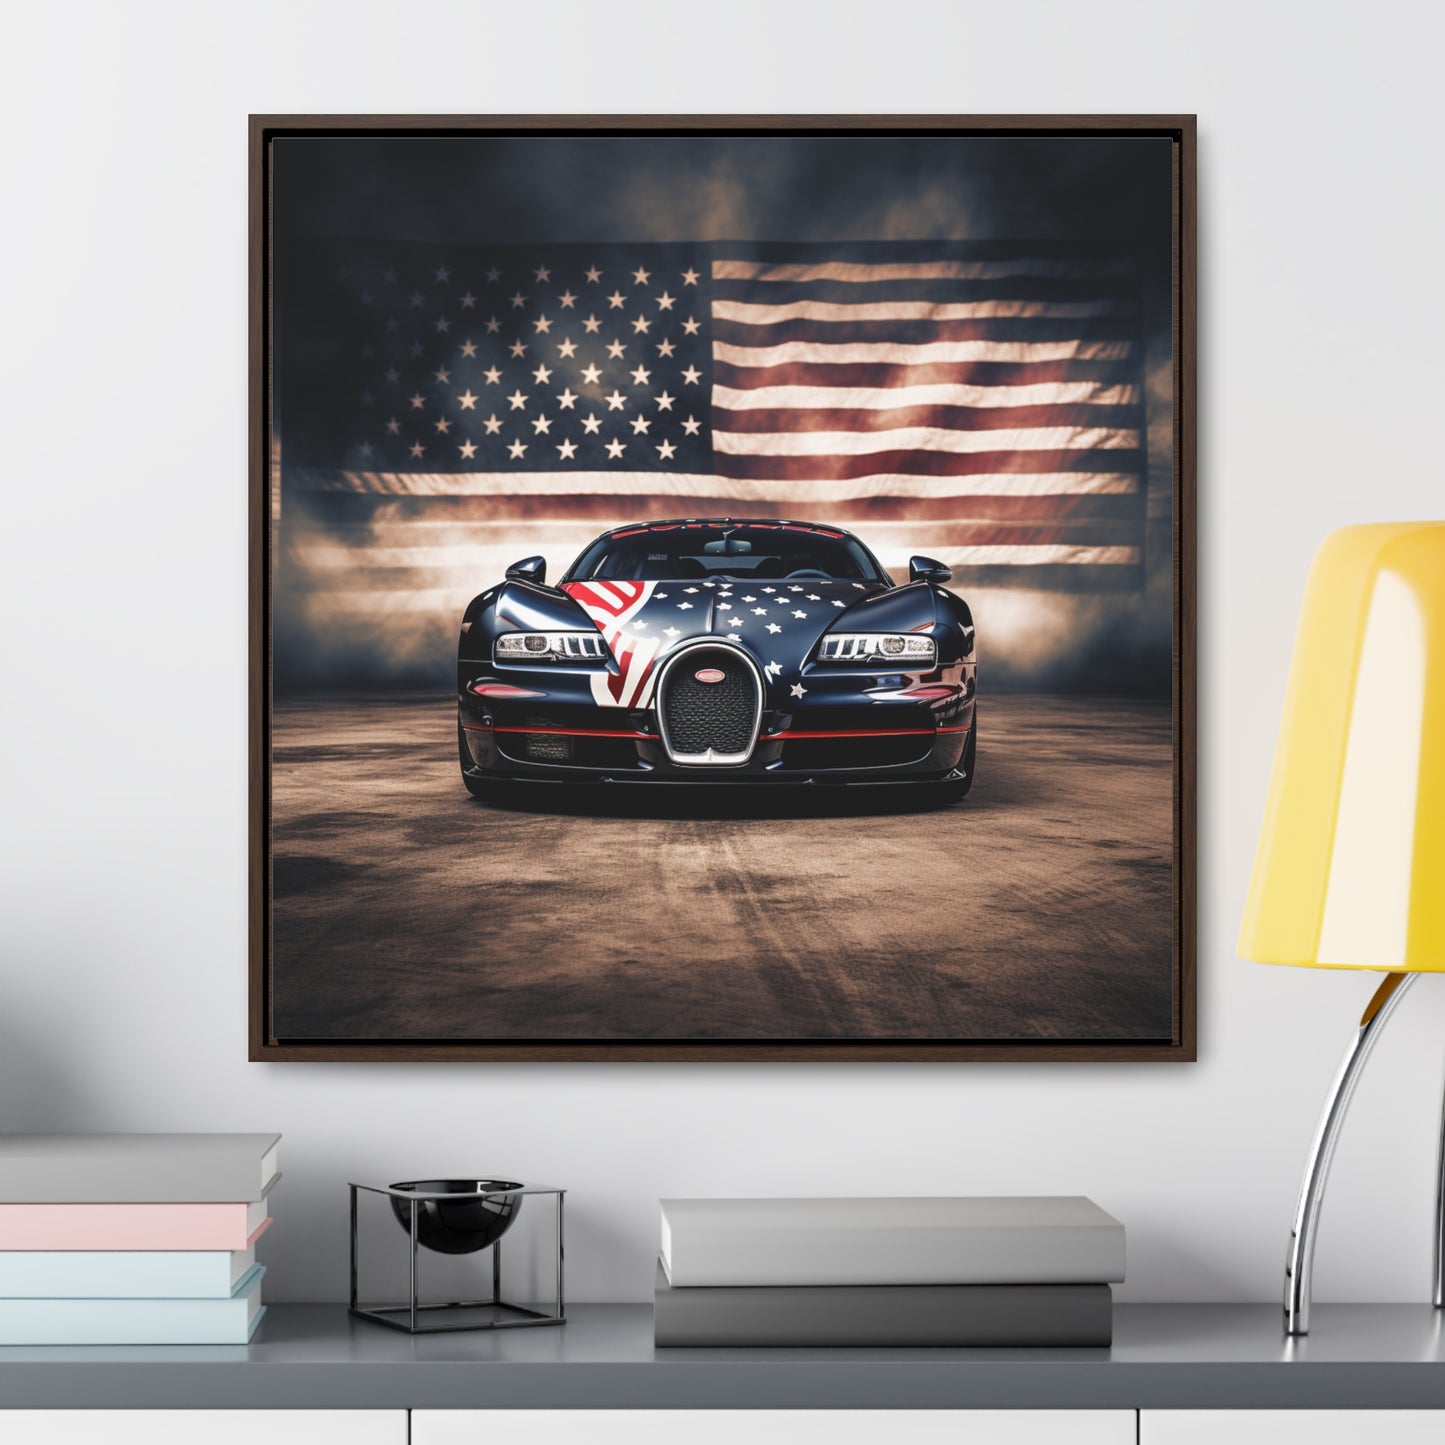 Gallery Canvas Wraps, Square Frame Bugatti American Flag 2